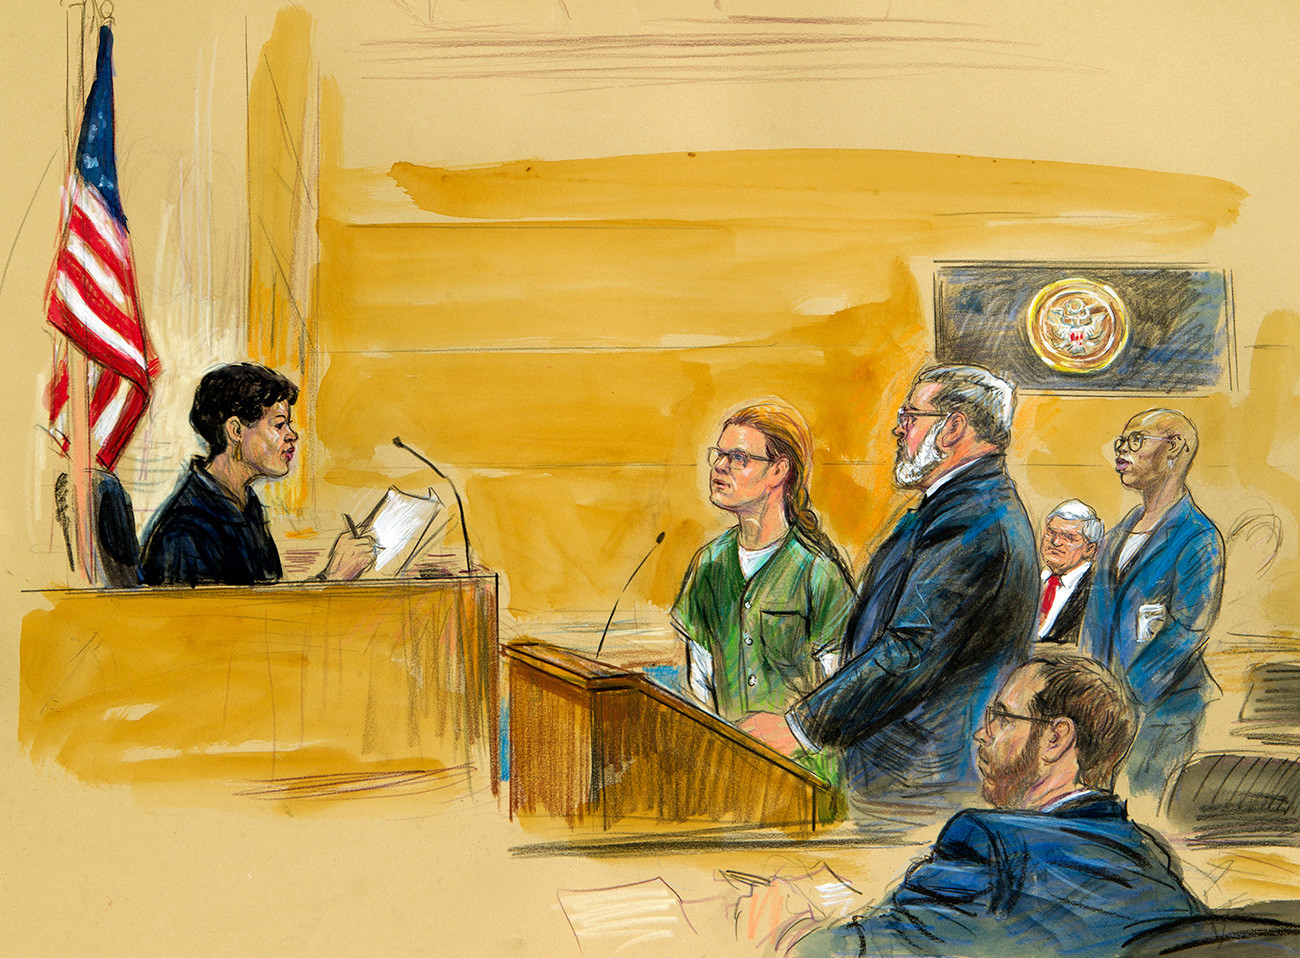 На скици суђења приказана је Марија Бутина са својим адвокатом Робертом Дрисколом пред окружним судијом у четвртак 13. децембра 2018.